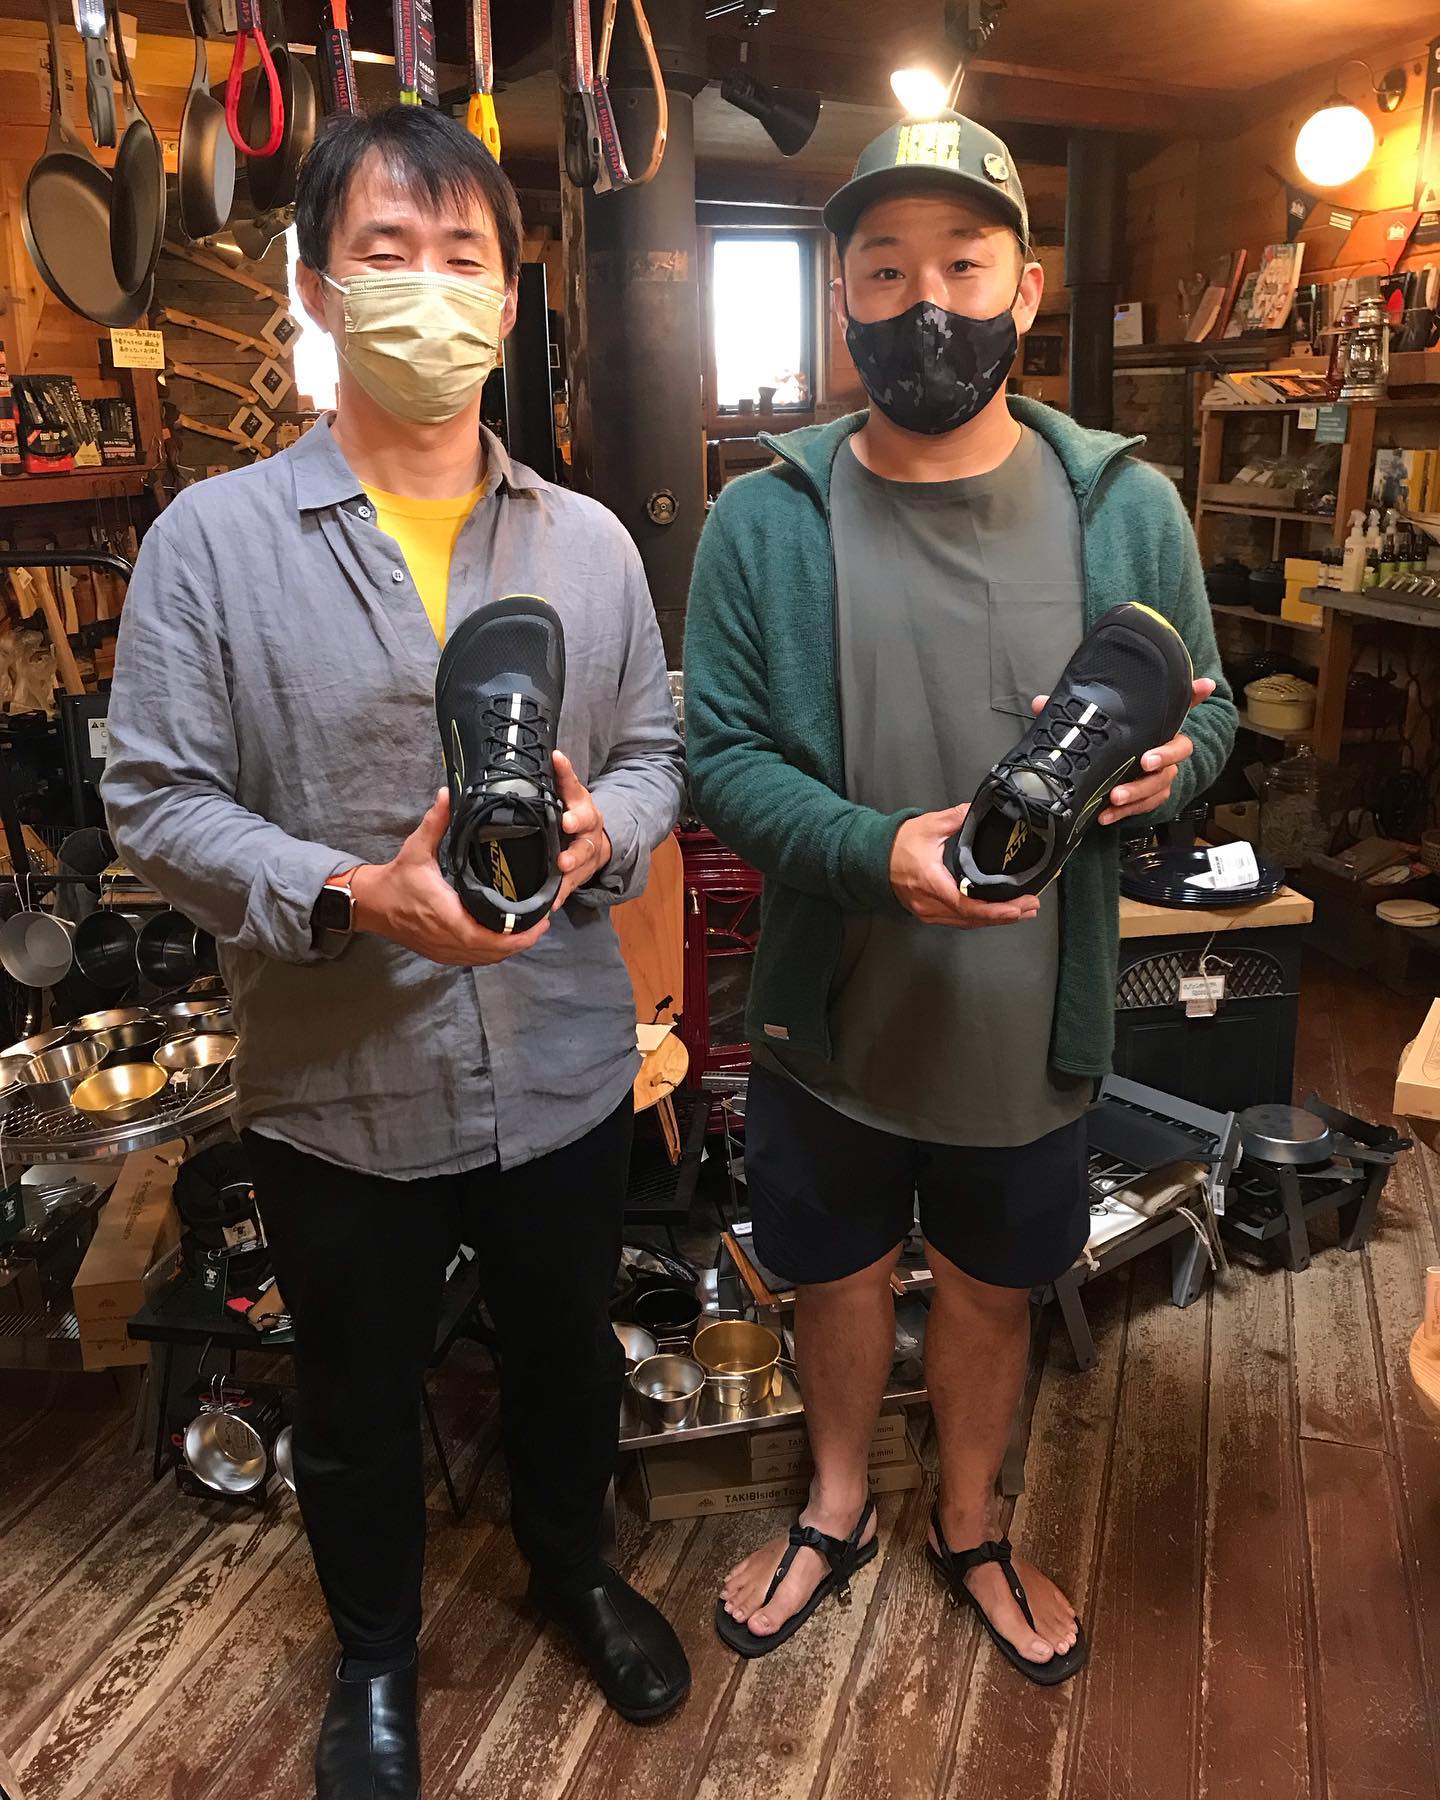 ALTRA日本総代理店 LOTUS代表の福地さんがご来店！いつもありがとうございます福地さん、いつもALTRA入荷のタイミングでご来店いただいております笑（たまたまなんですが。。笑）本日の入荷はMENS LONE PEAK ALL WTHR LOW大人気のLONE PEAKの防水タイプです☂️本日の天候にピッタリの商品靴は、試着してナンボ！是非足を入れて、ALTRAの最高の履き心地を試してみてください！#altra #2021fw #altralonepeak #allweather #トレイルランニング #トレイルラン #トレイルランニングシューズ #ベアフットランニング #ゼロドロップ #ゼロドロップシューズ #ロードランナー #防水 #altraego #maxtrac #最強のシューズ